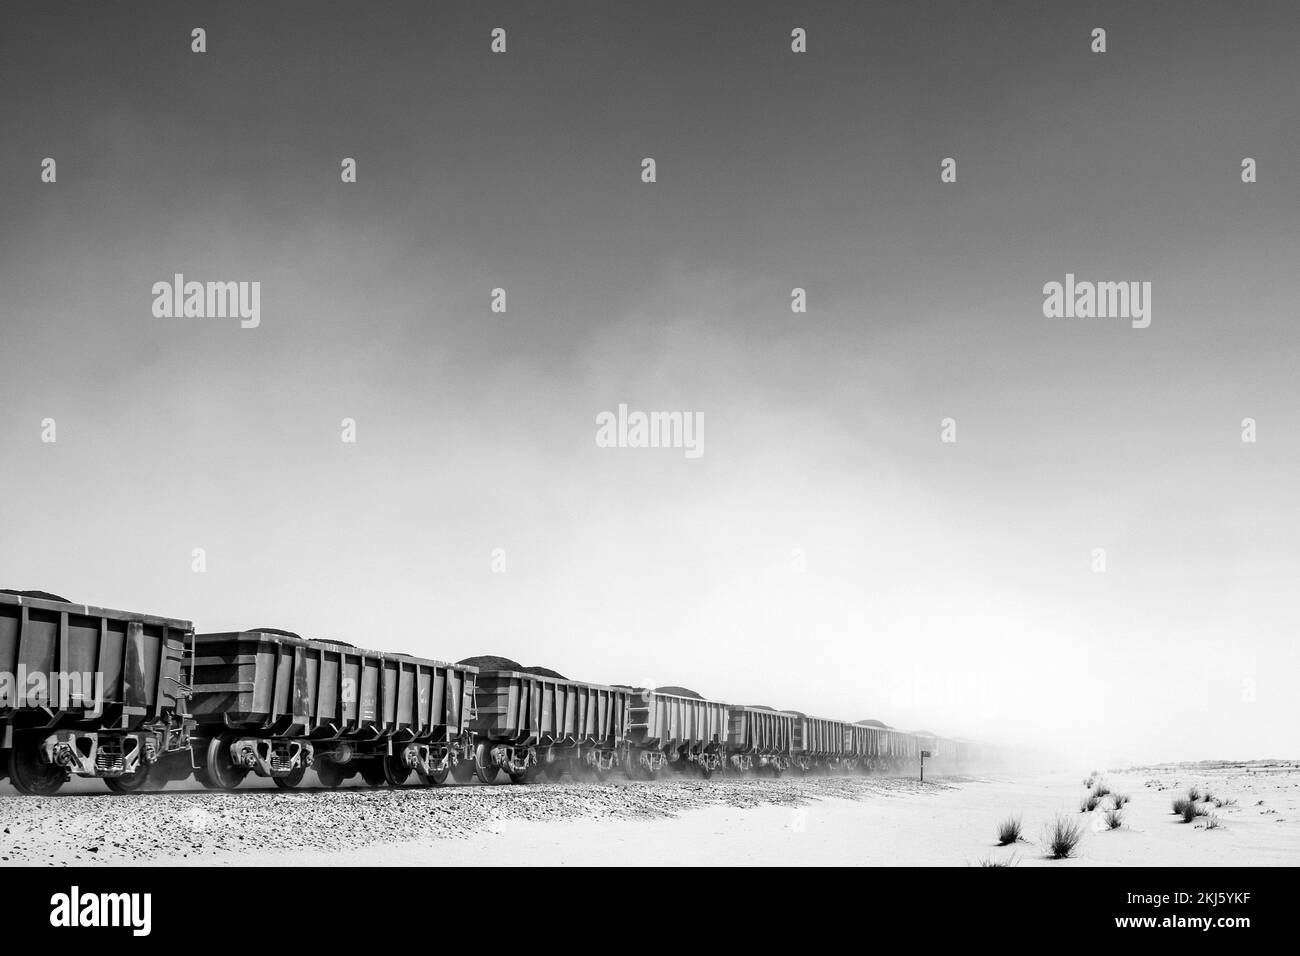 Mauritania, Nouadhibou-Zouerat railway Stock Photo